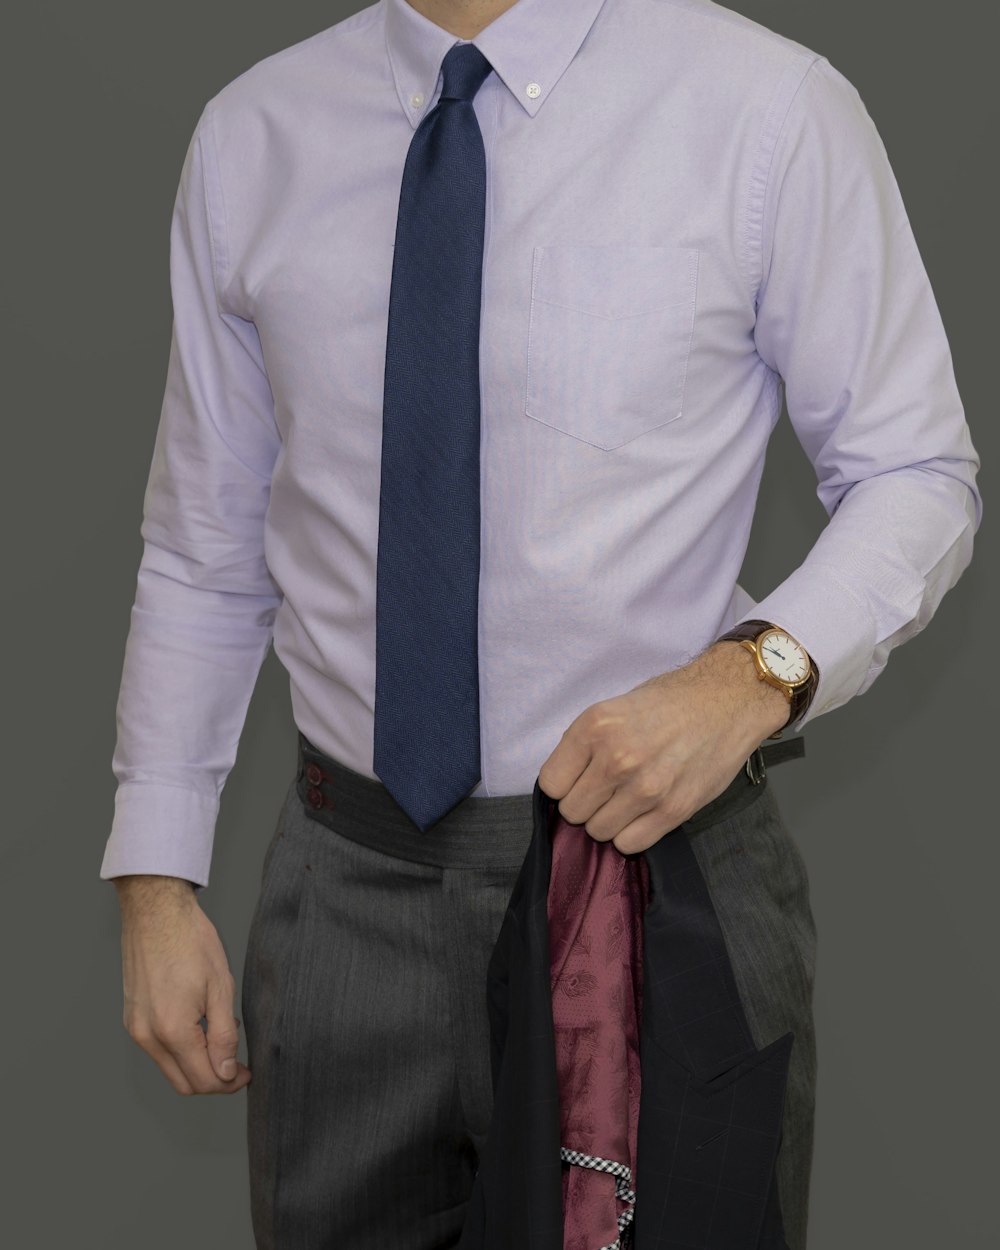 man in white dress shirt and black necktie